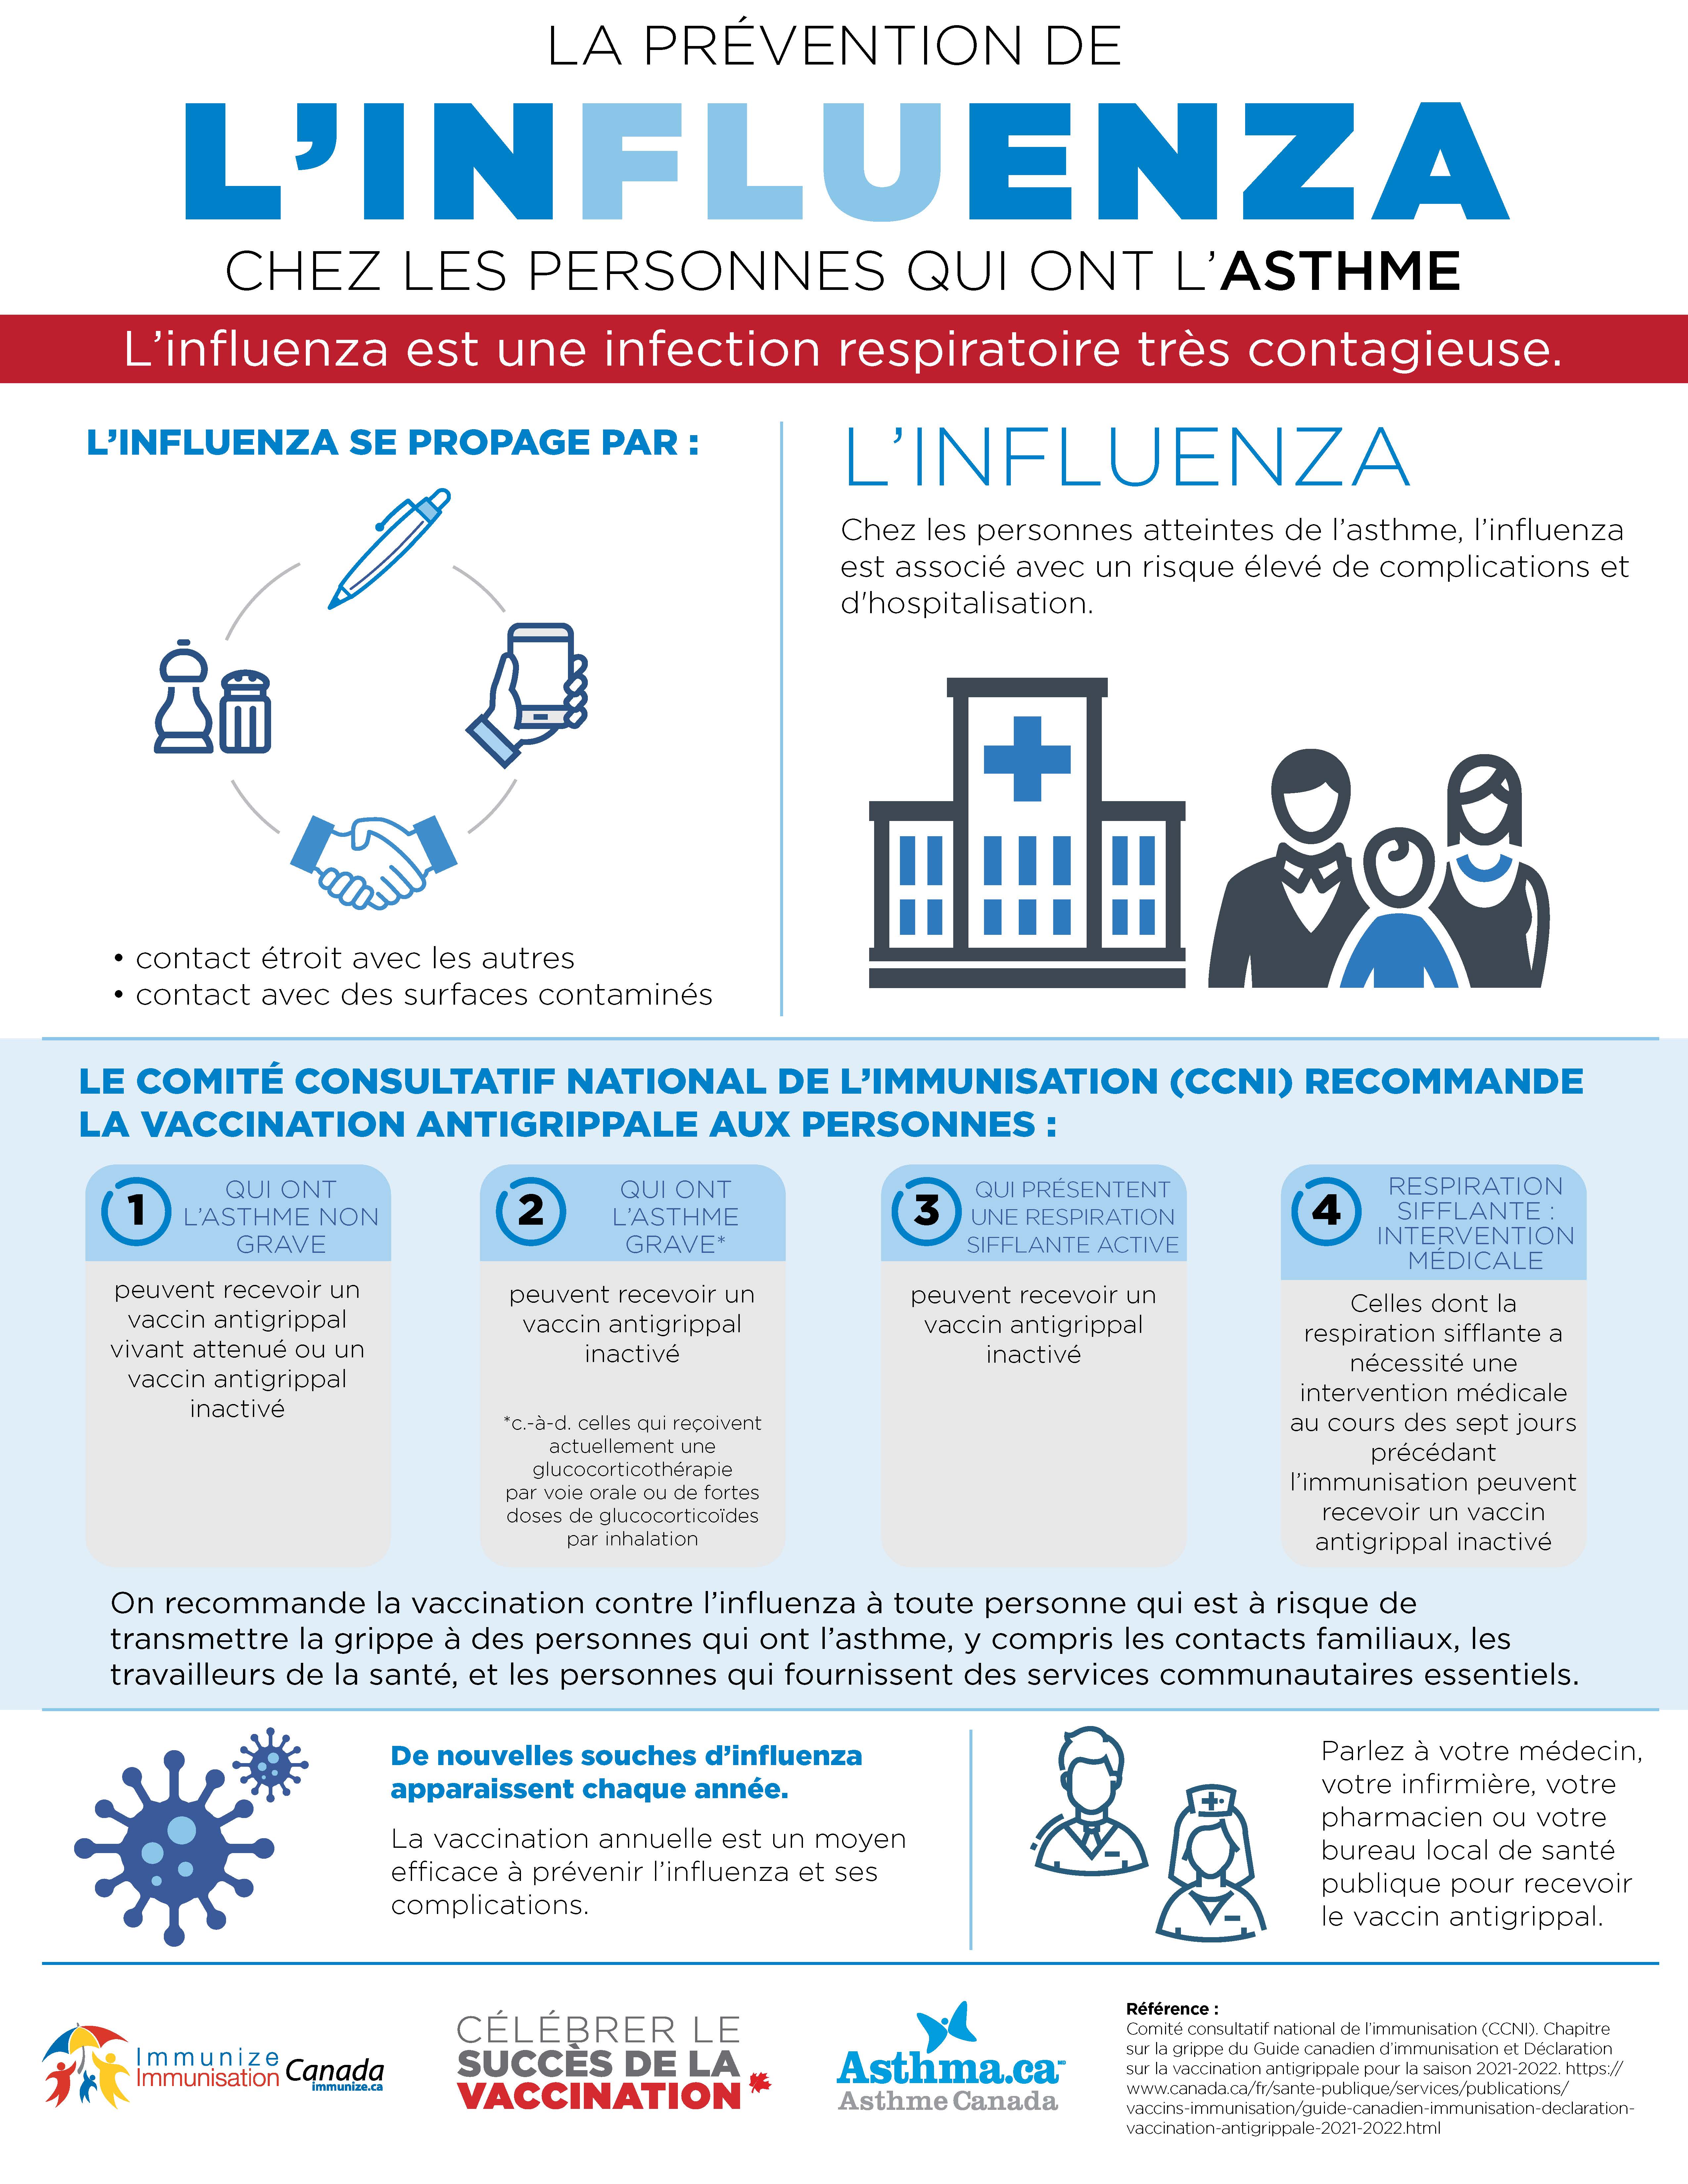 La prévention de la grippe chez les personnes qui ont l’asthme - infographie